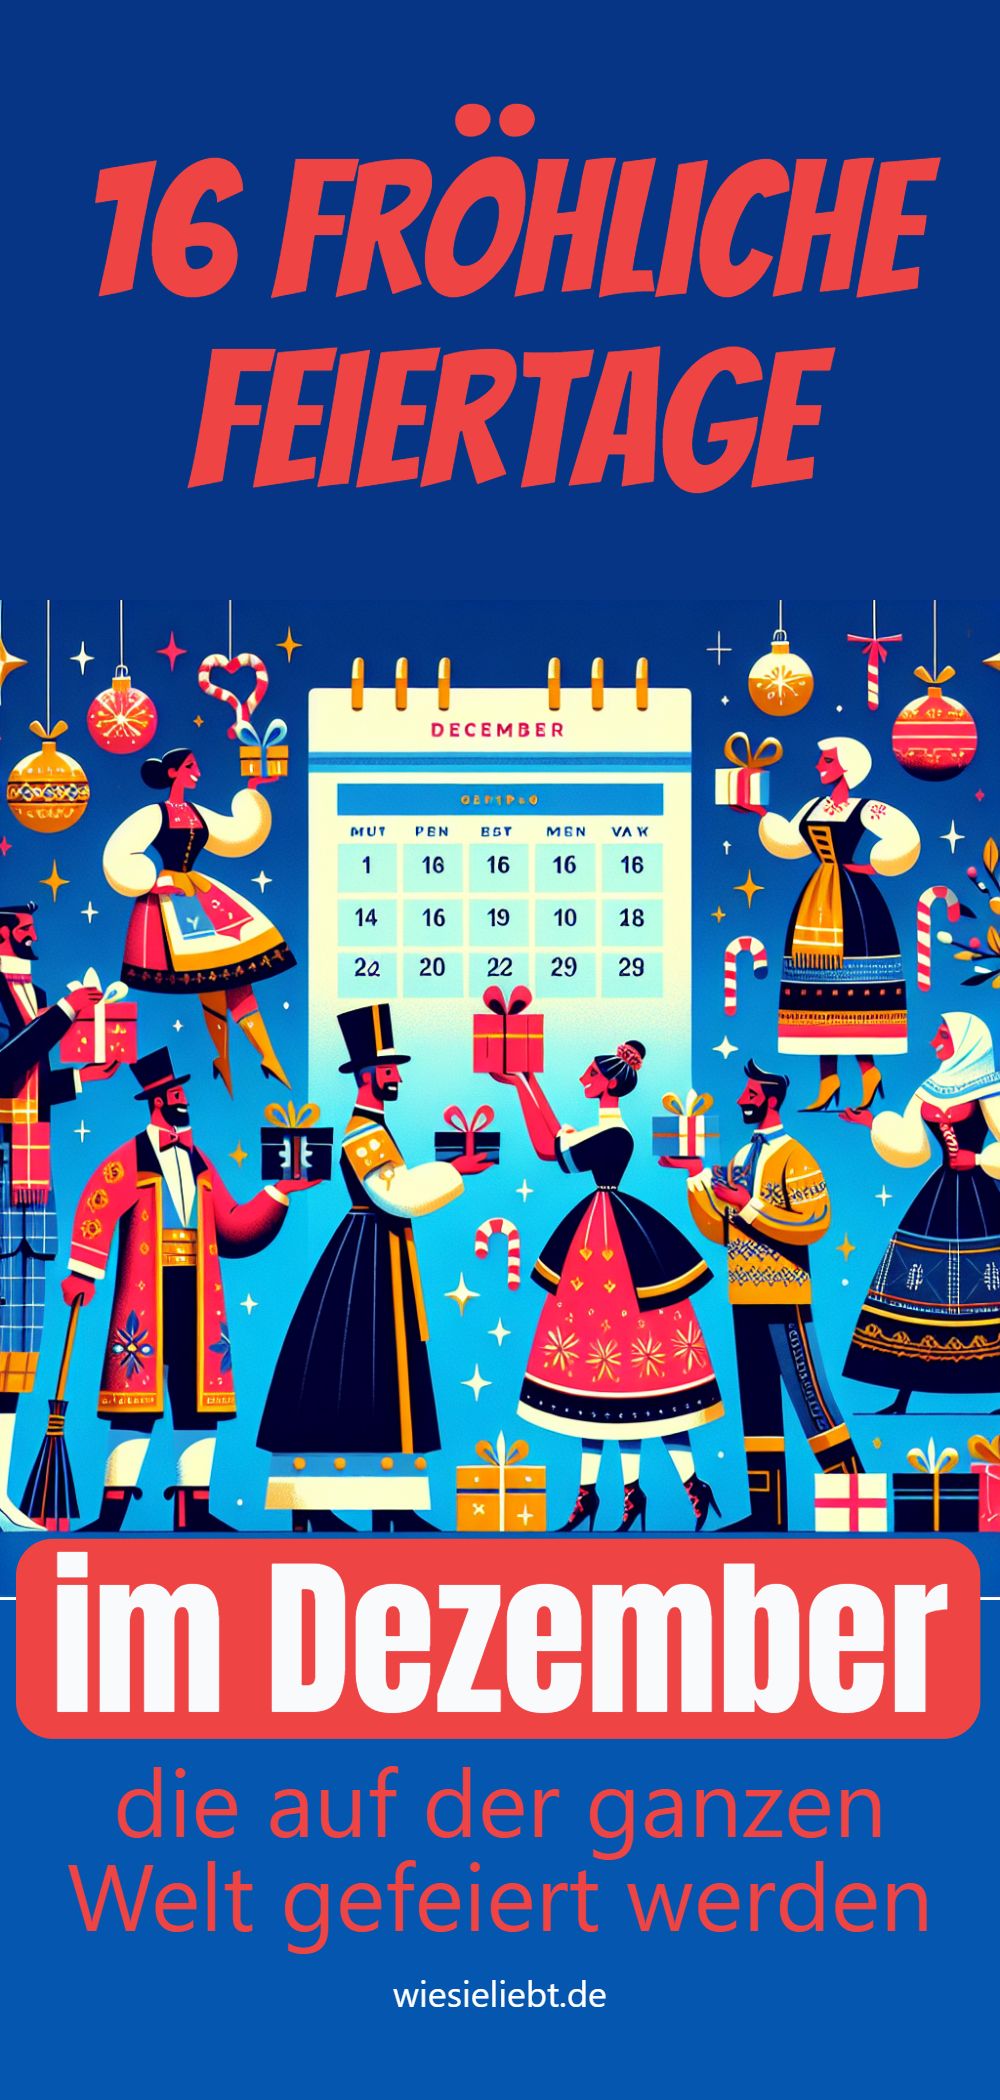 16 fröhliche Feiertage im Dezember die auf der ganzen Welt gefeiert werden